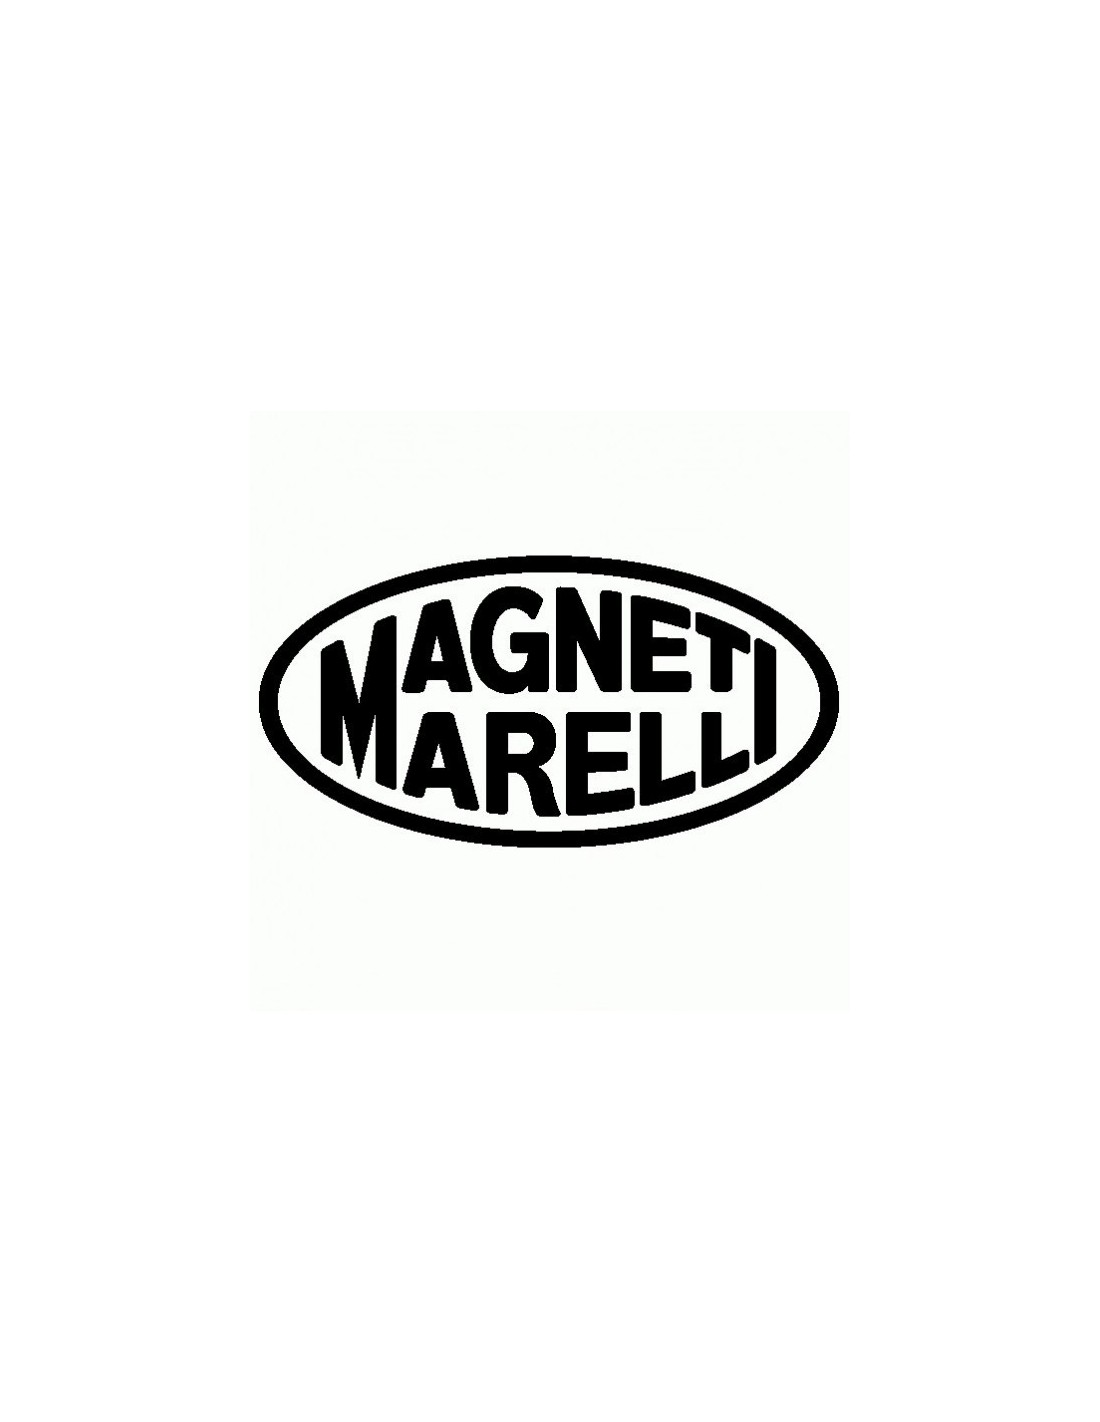 Magneti Marelli - Adesivo Prespaziato - AdesiviStore